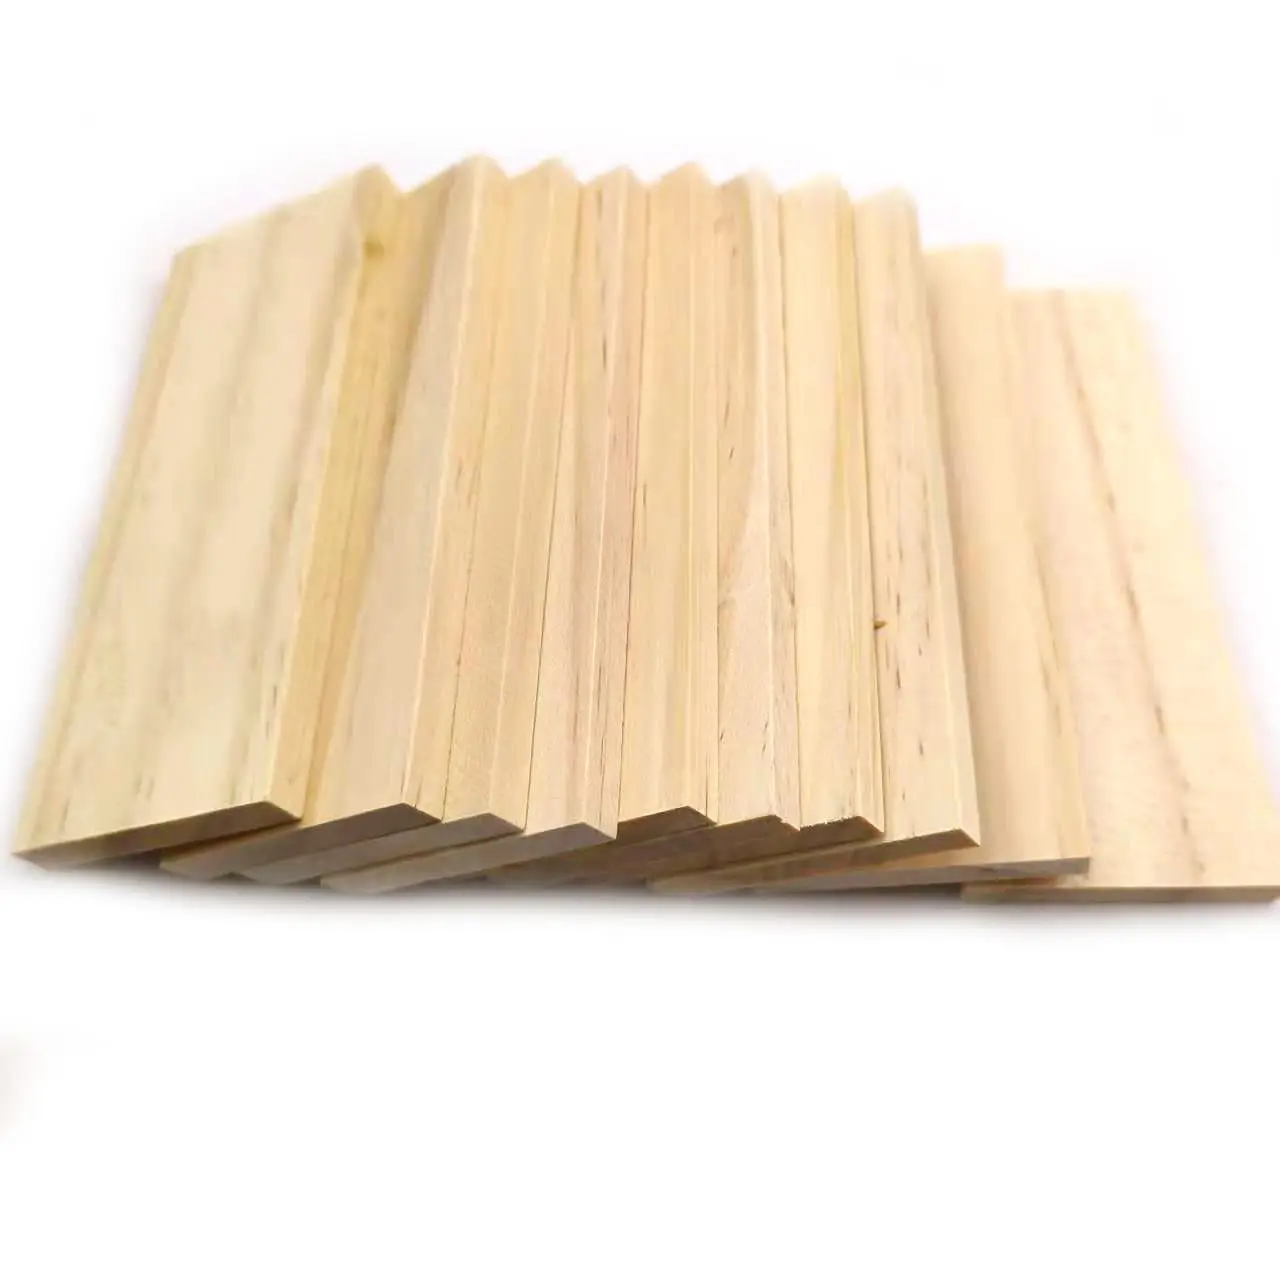 Tablero rectangular de madera de pino Natural para manualidades, 10 unidades, 10cm